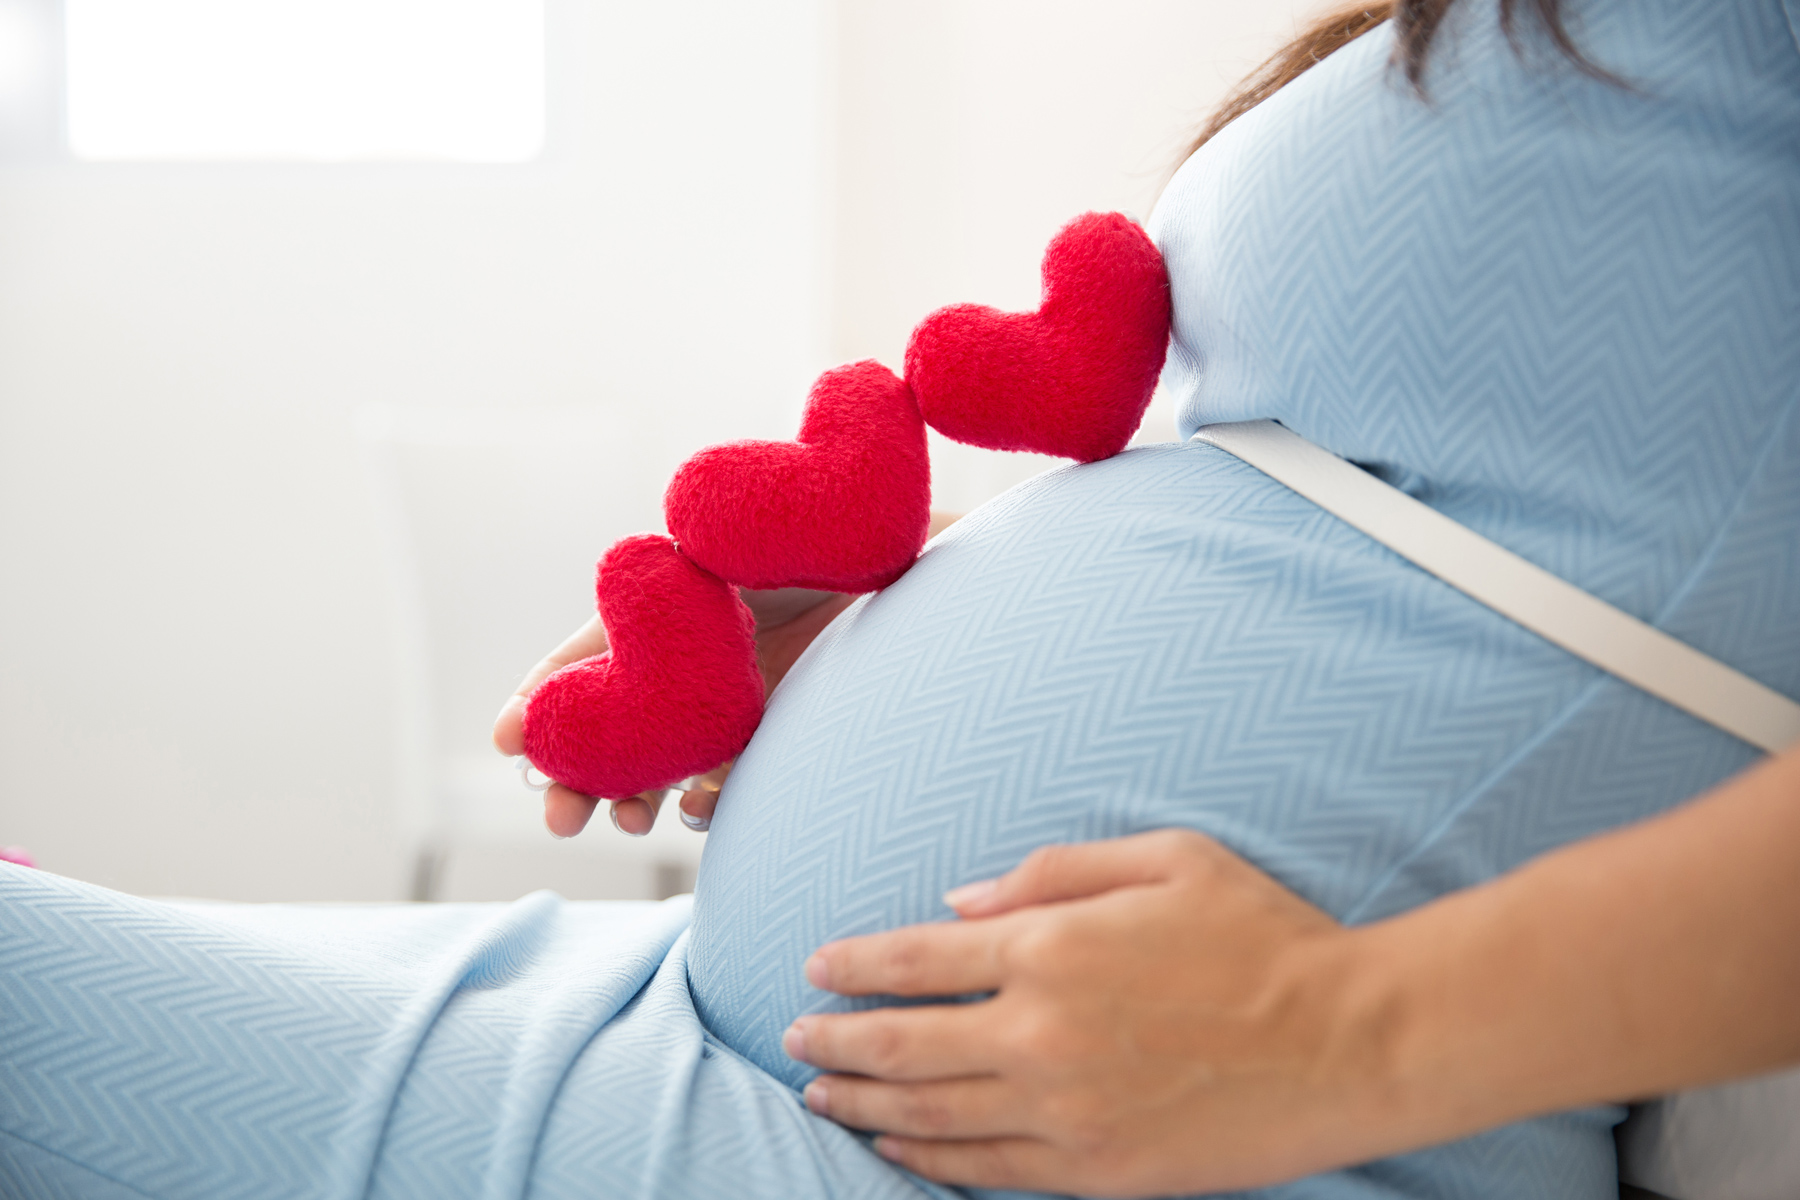 Помощь психолога при беременности, каприз или необходимость